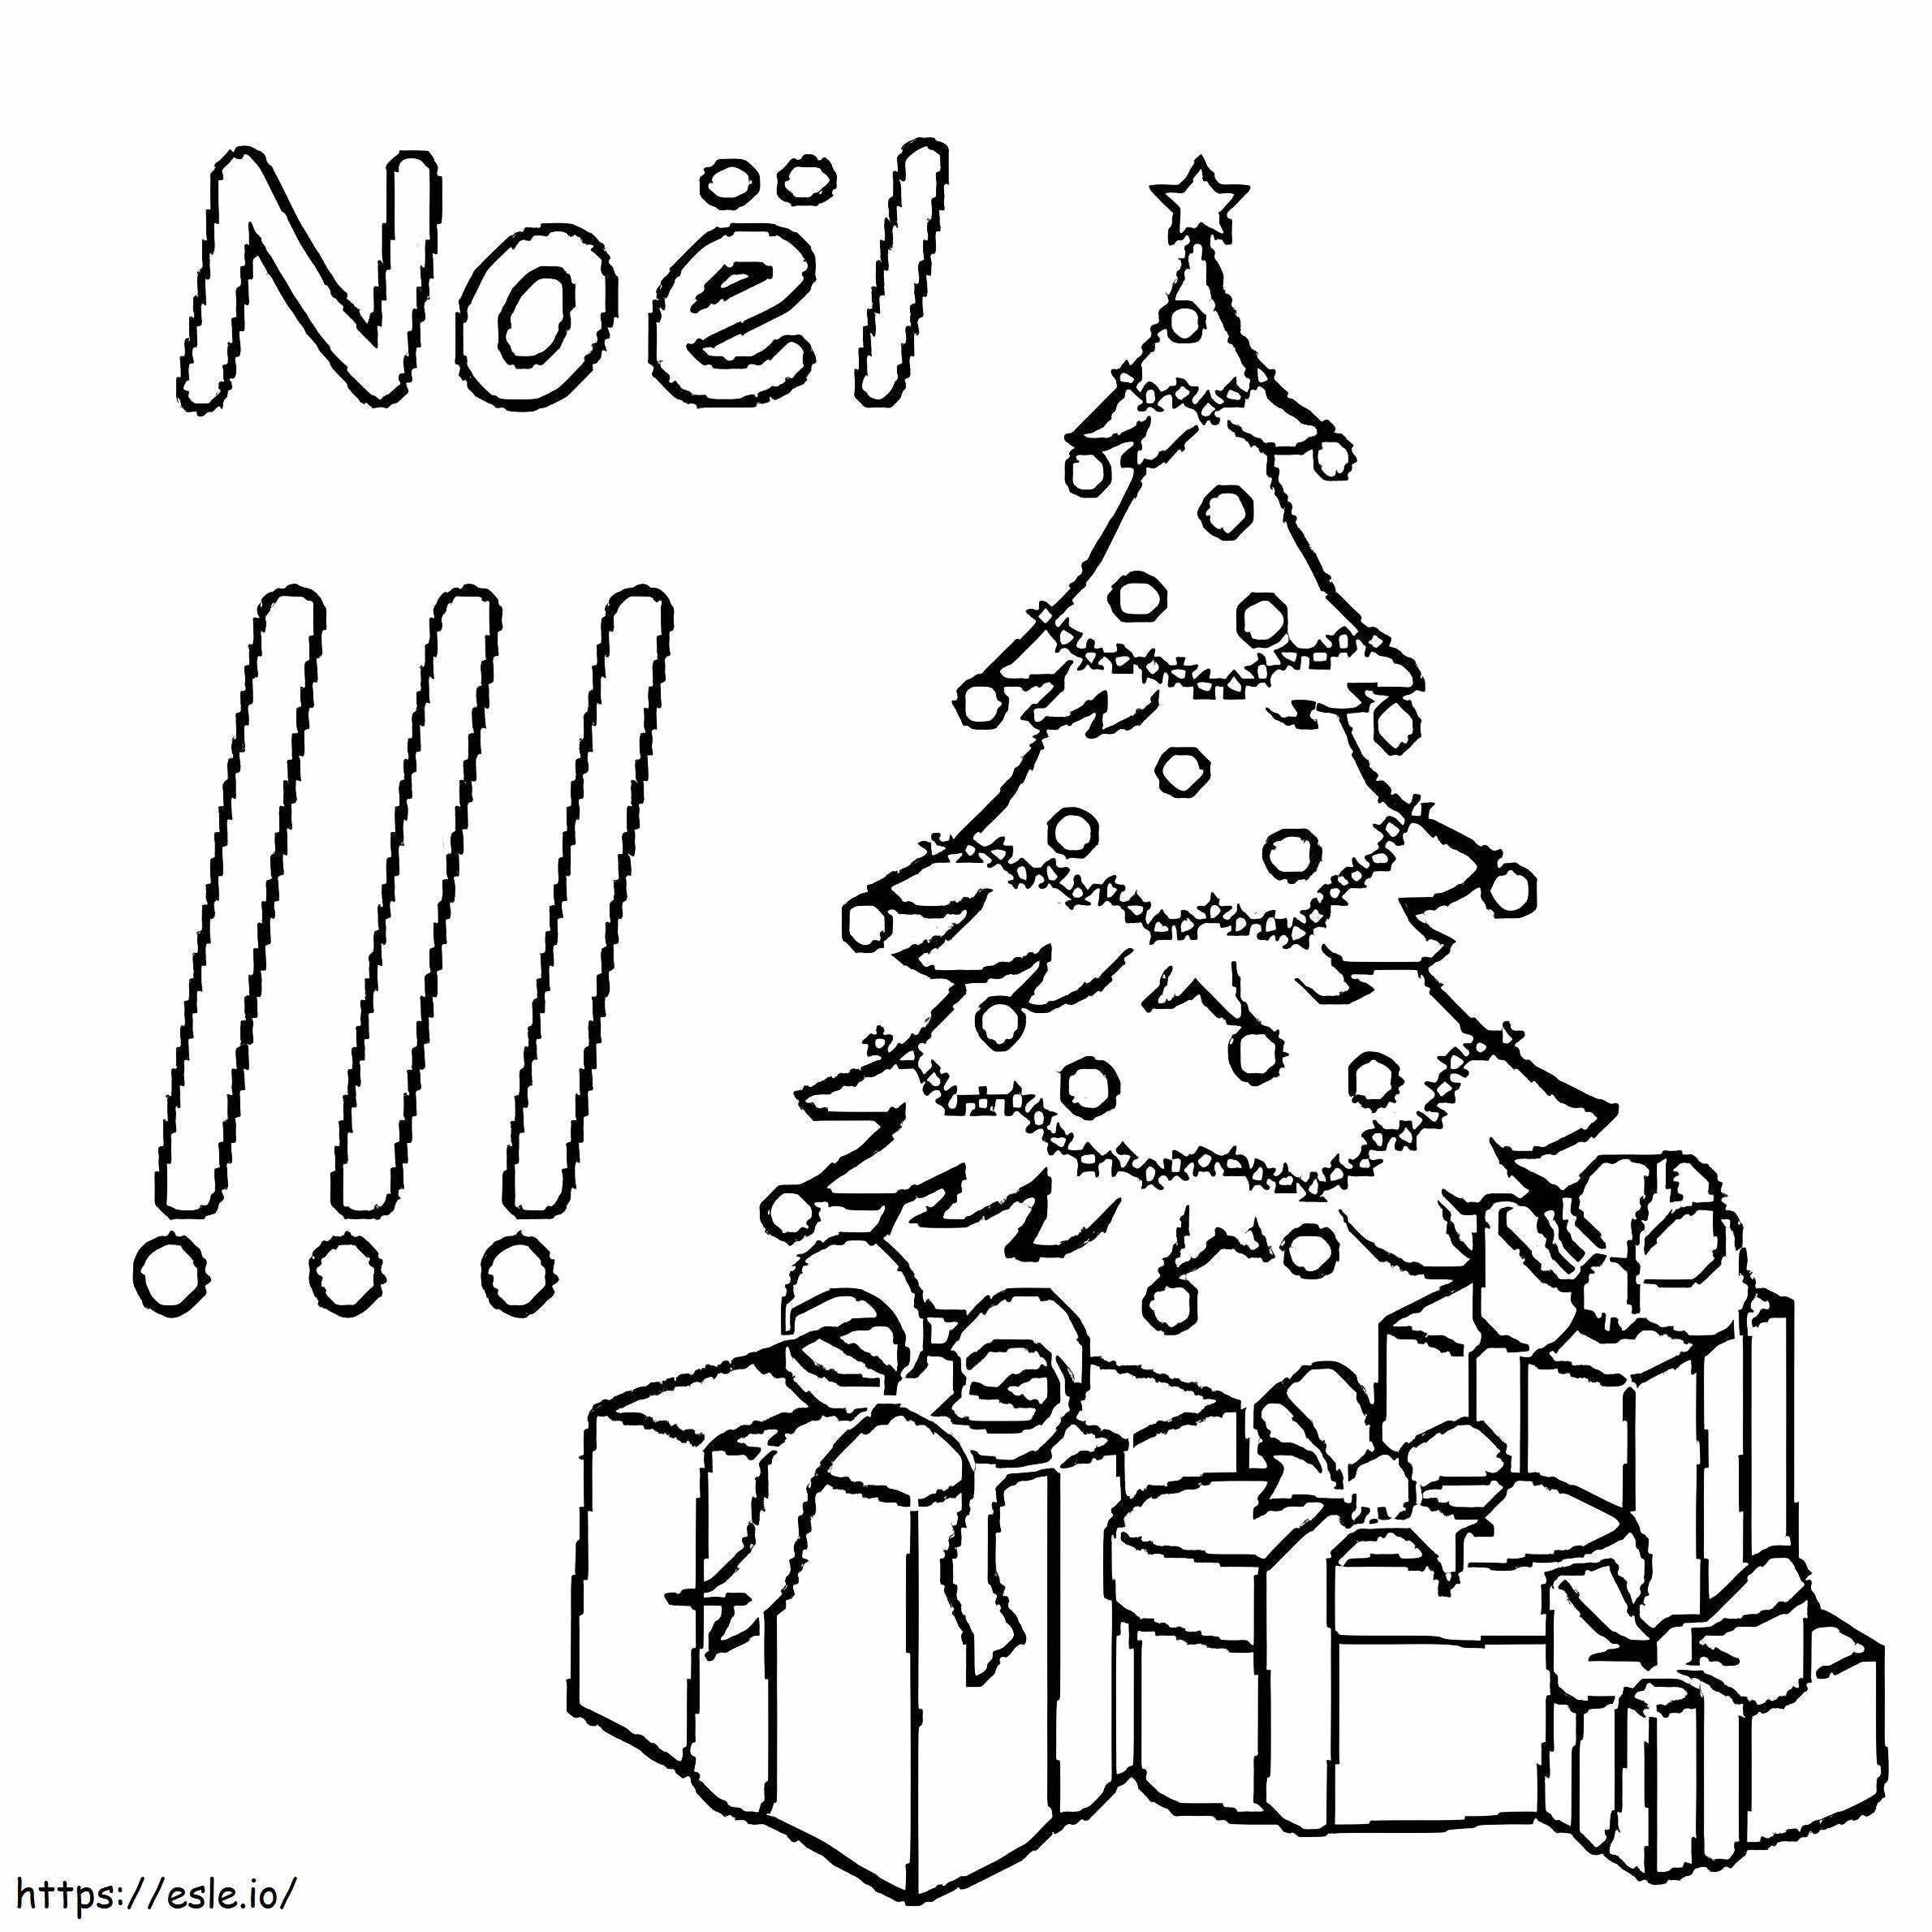 Coloriage Noël avec arbre de Noël et cadeaux à imprimer dessin